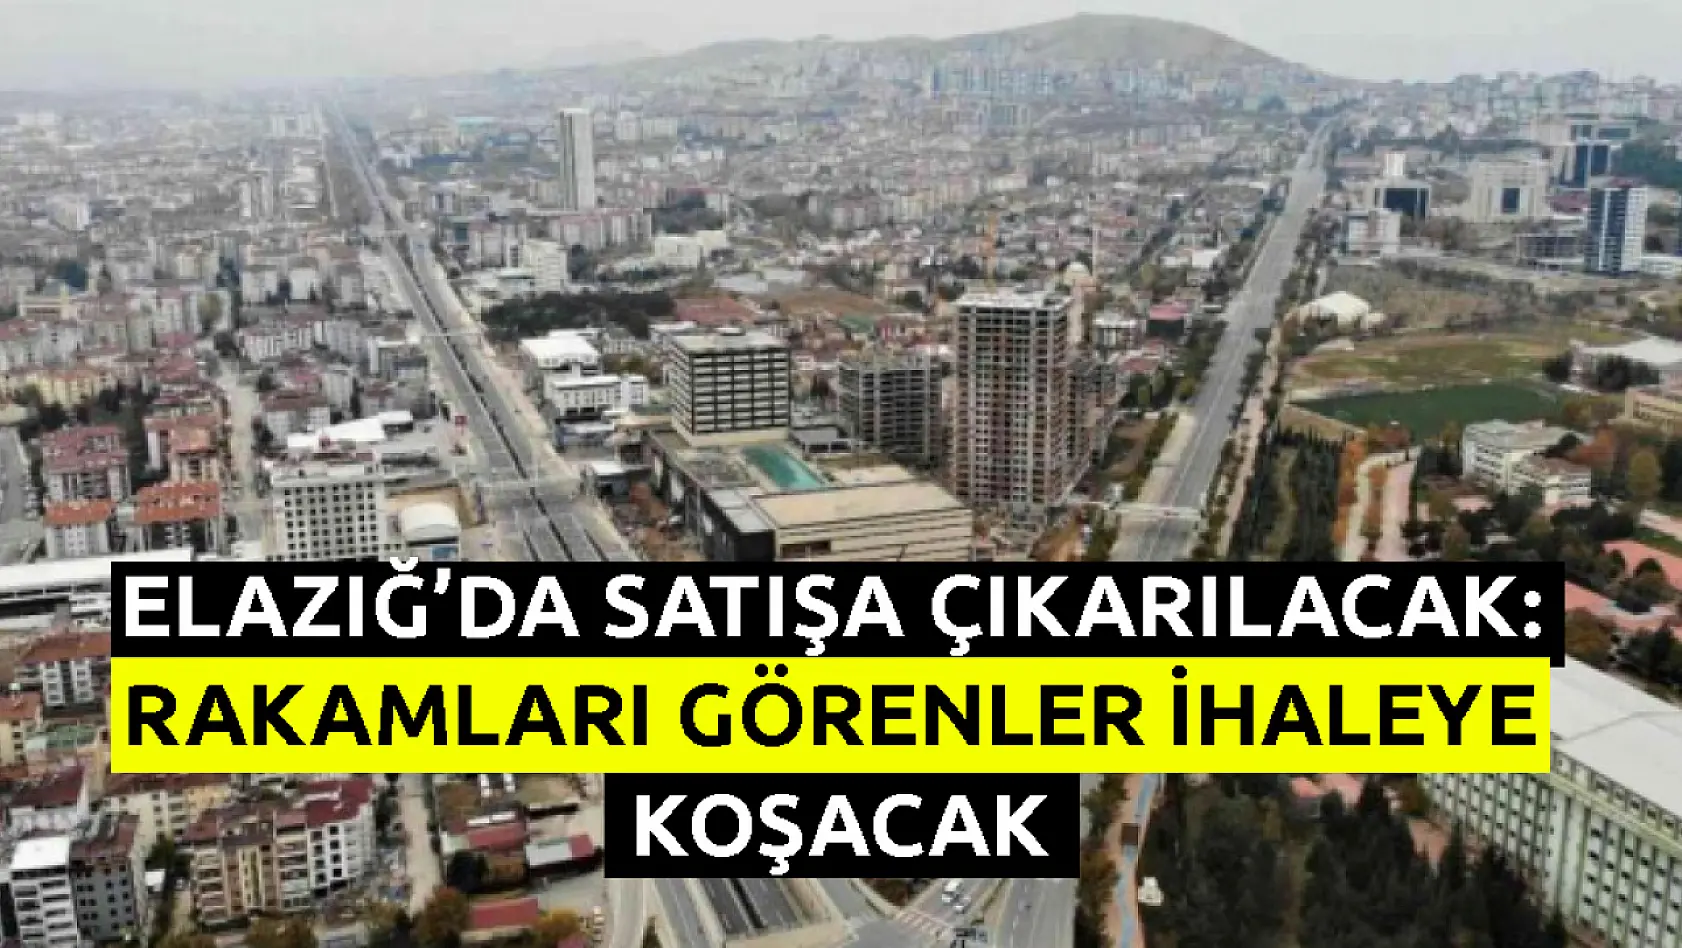 Elazığ Belediyesi sudan ucuza 13 arsa, 41 konut ve 15 dükkanı satacak: Rakamları görenler ihaleye koşacak!